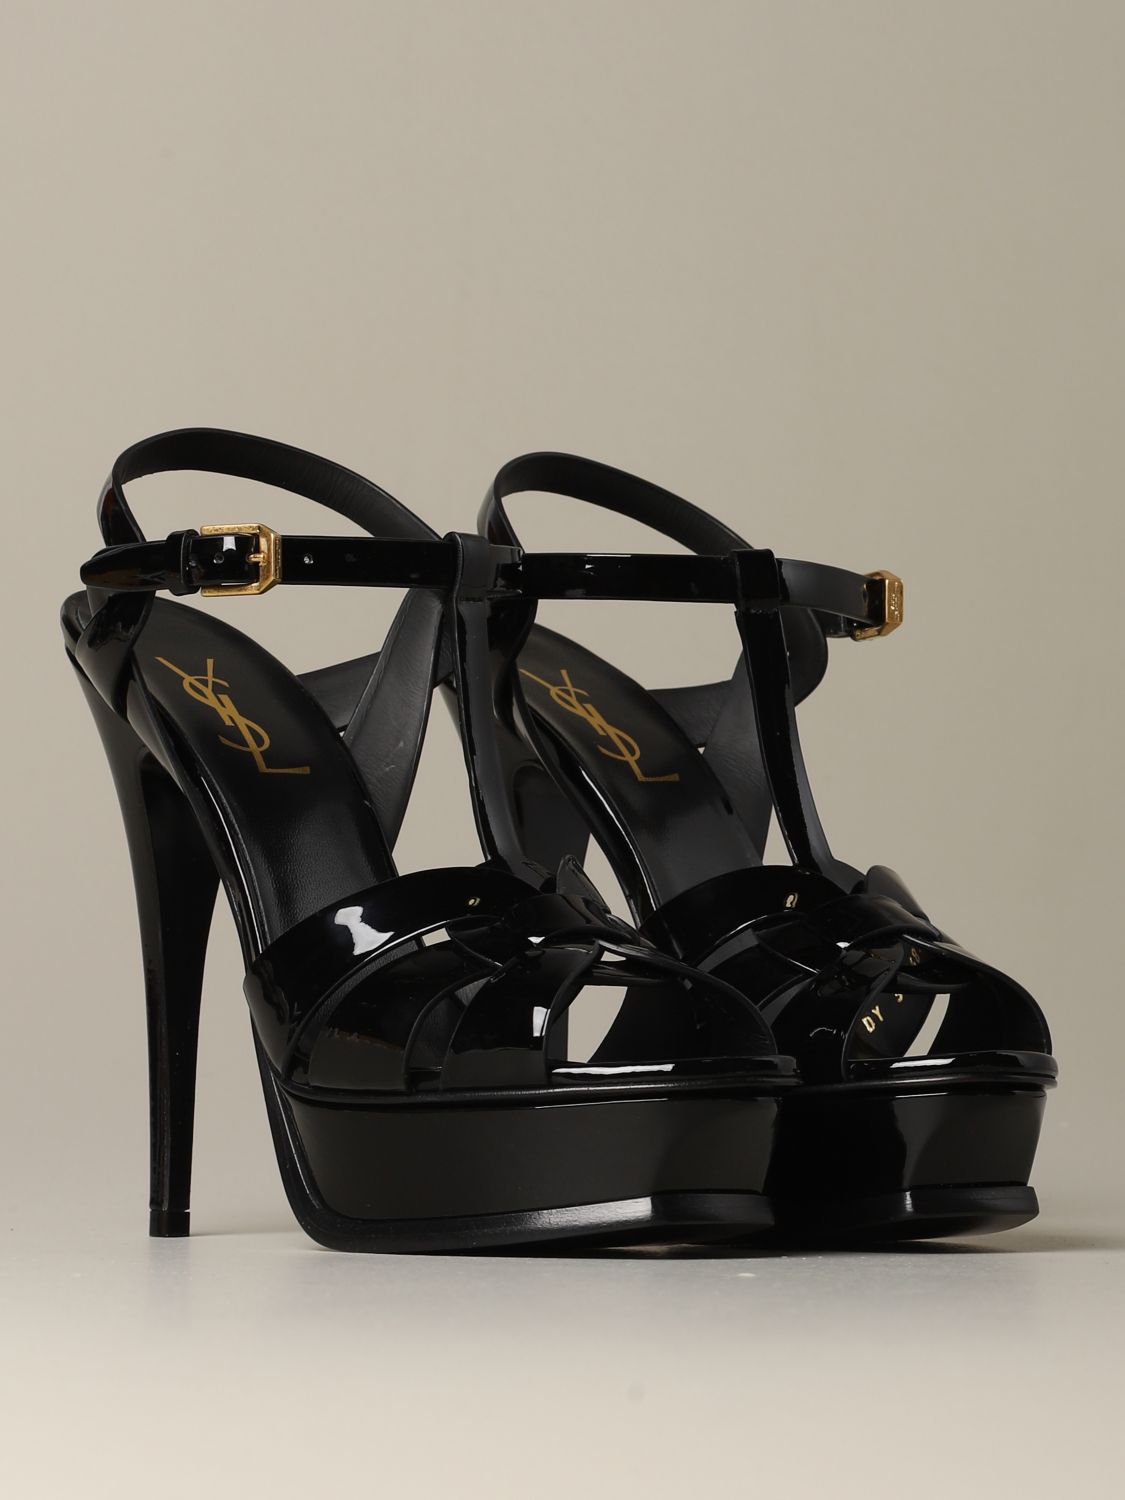 SAINT LAURENT: Tribute sandal in patent leather - Black | Saint Laurent ...